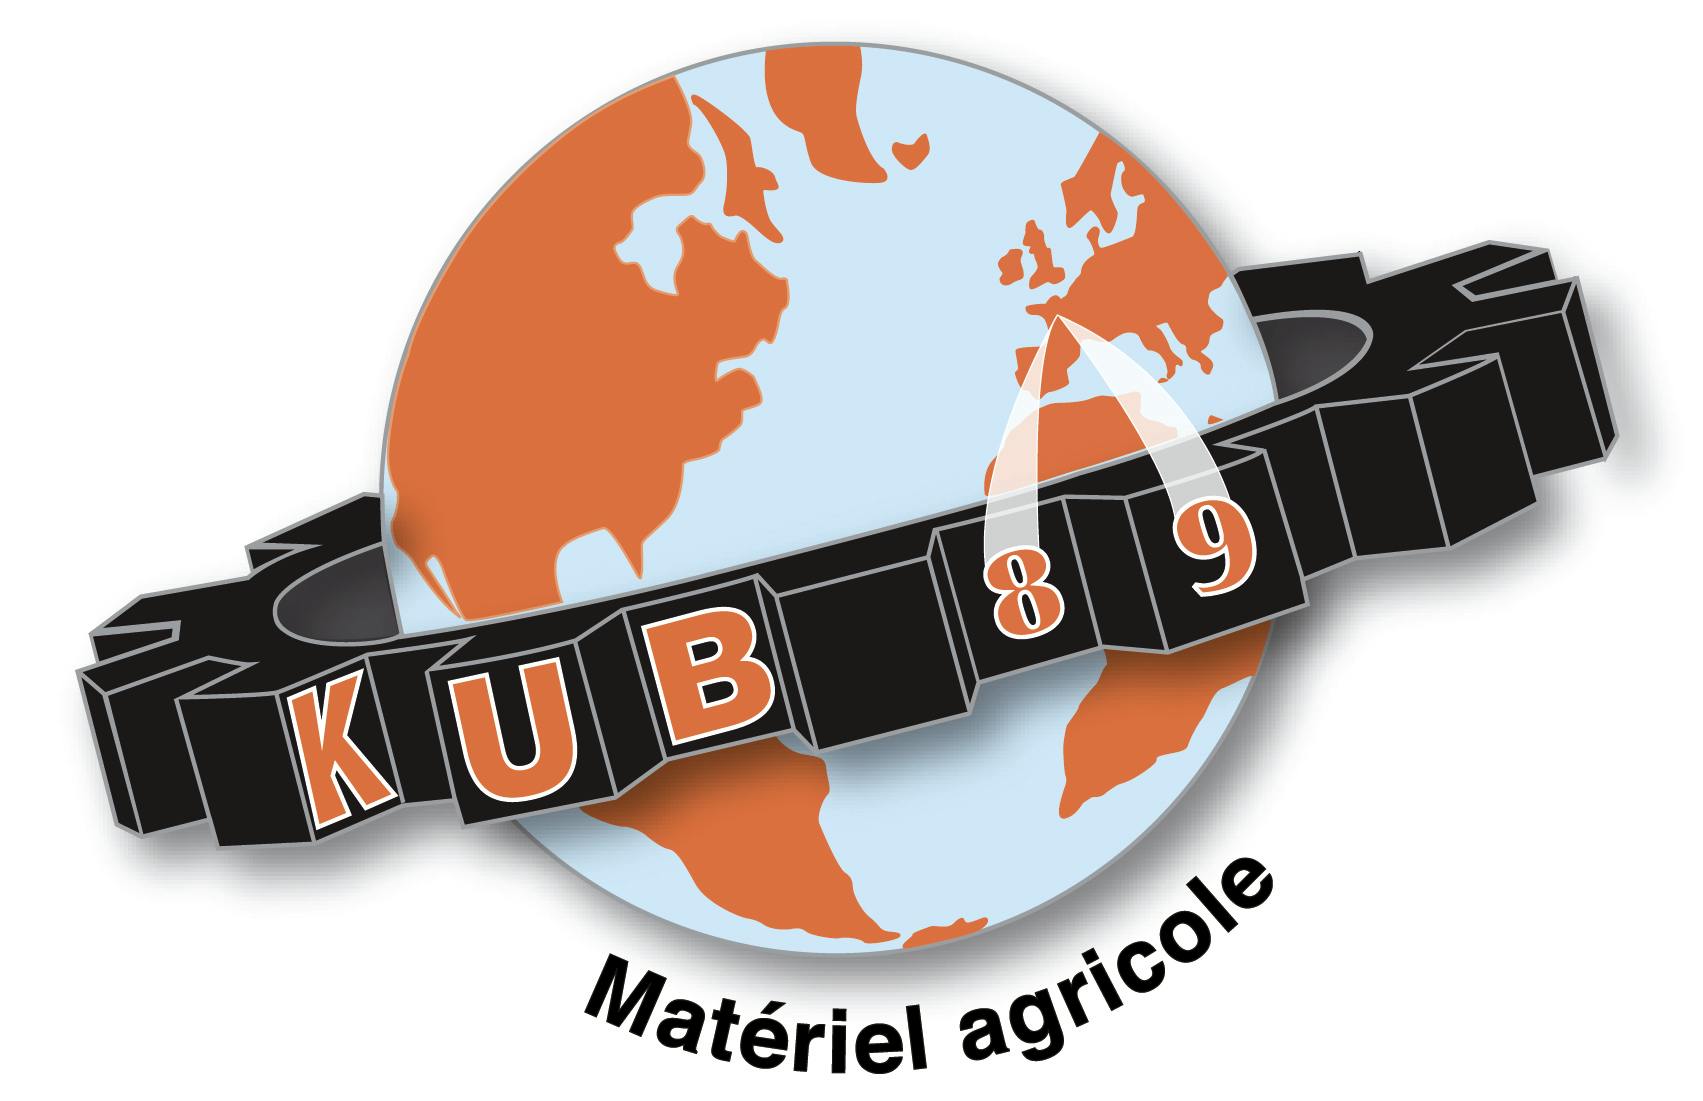 Company logo for 'KUB 89'.